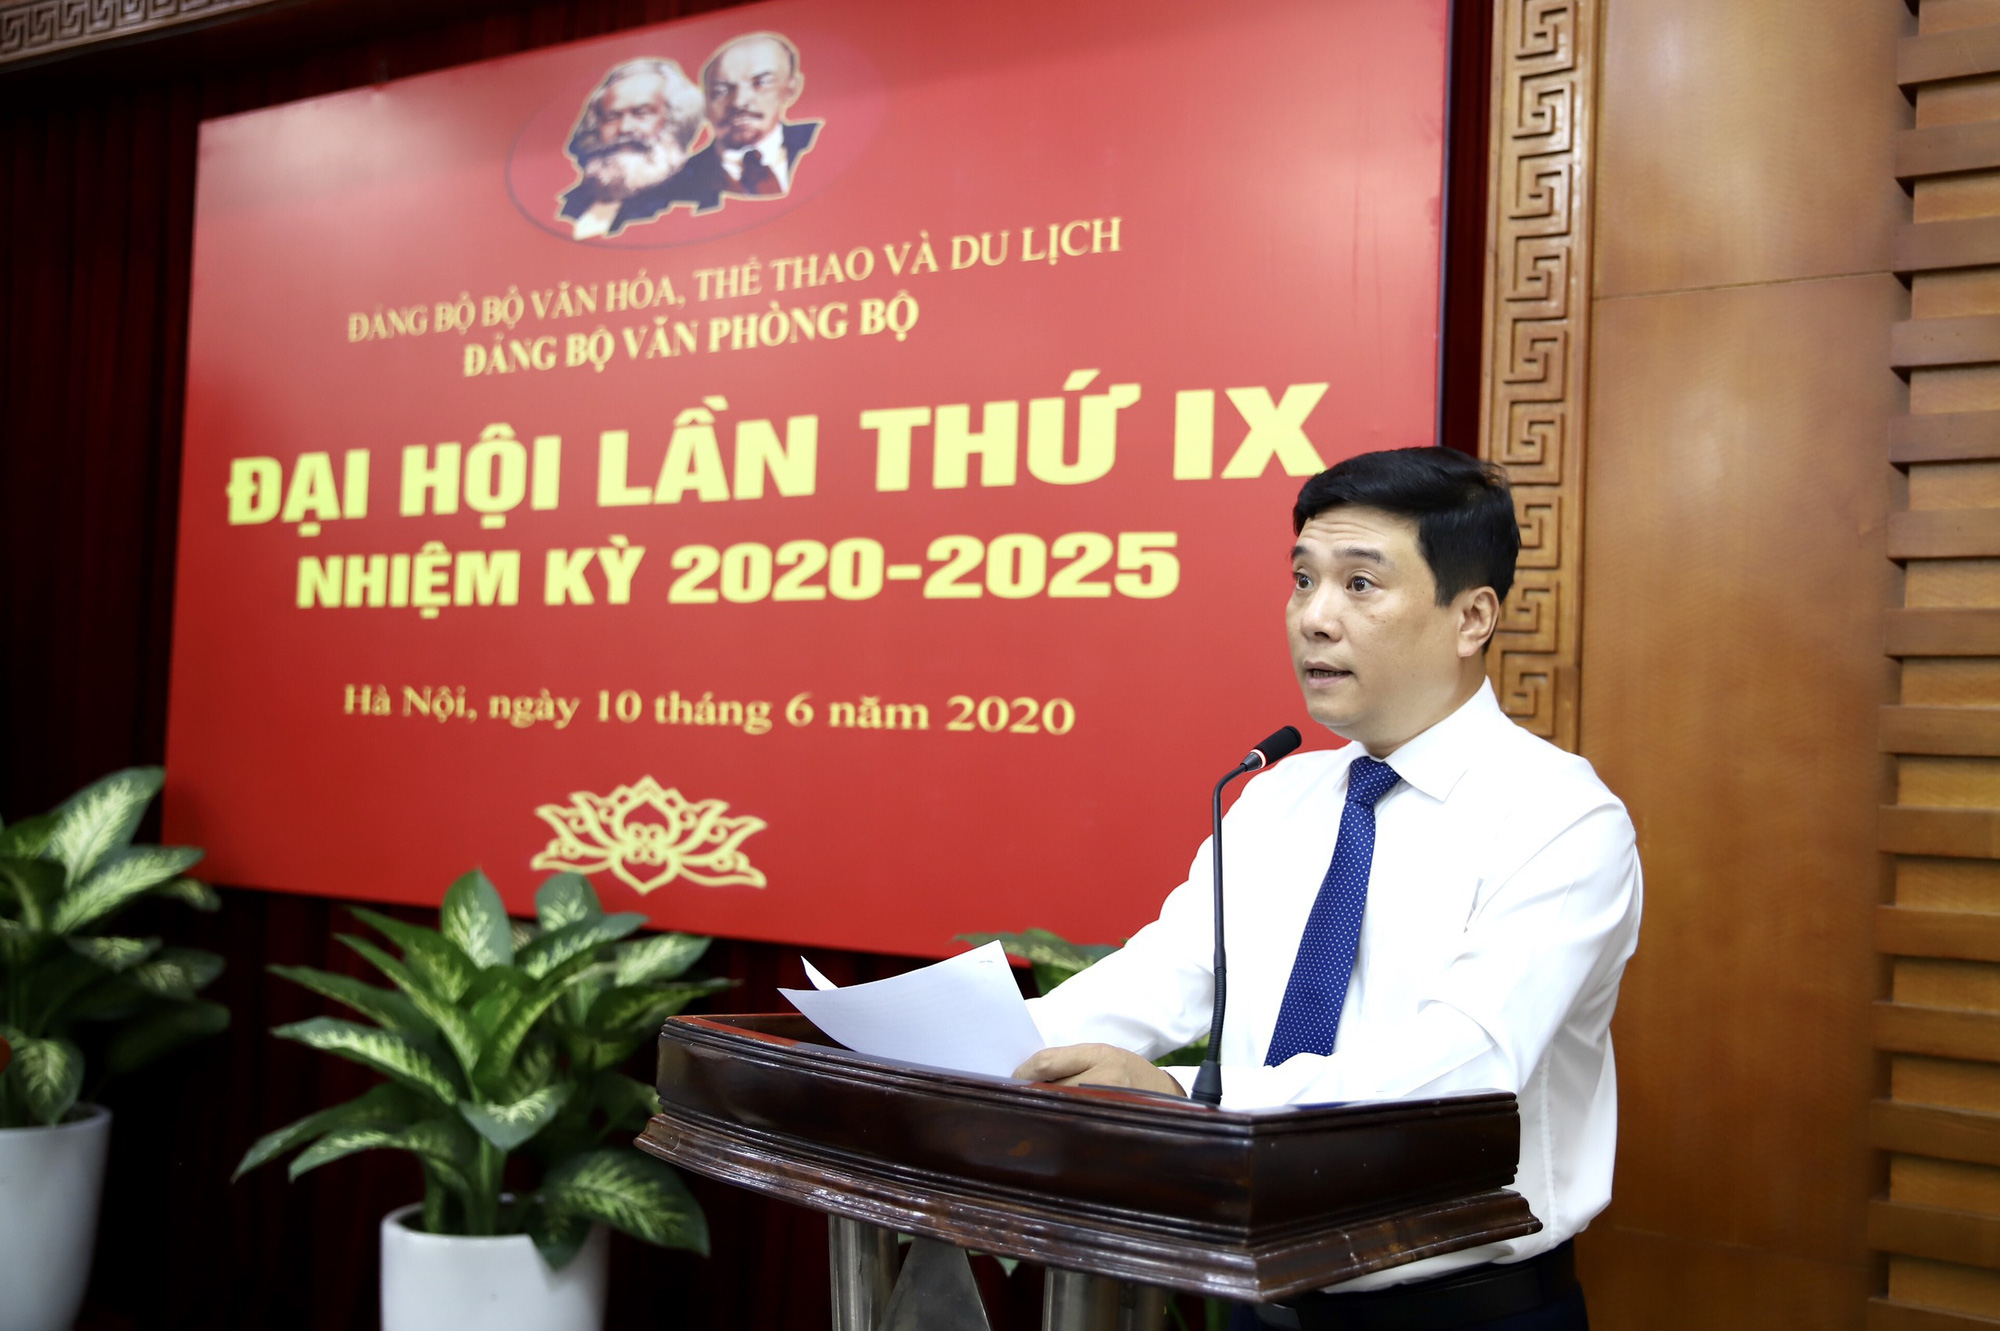  Ông Nguyễn Thái Bình tái đắc cử Bí thư Đảng ủy Văn phòng Bộ VHTTDL - Ảnh 1.